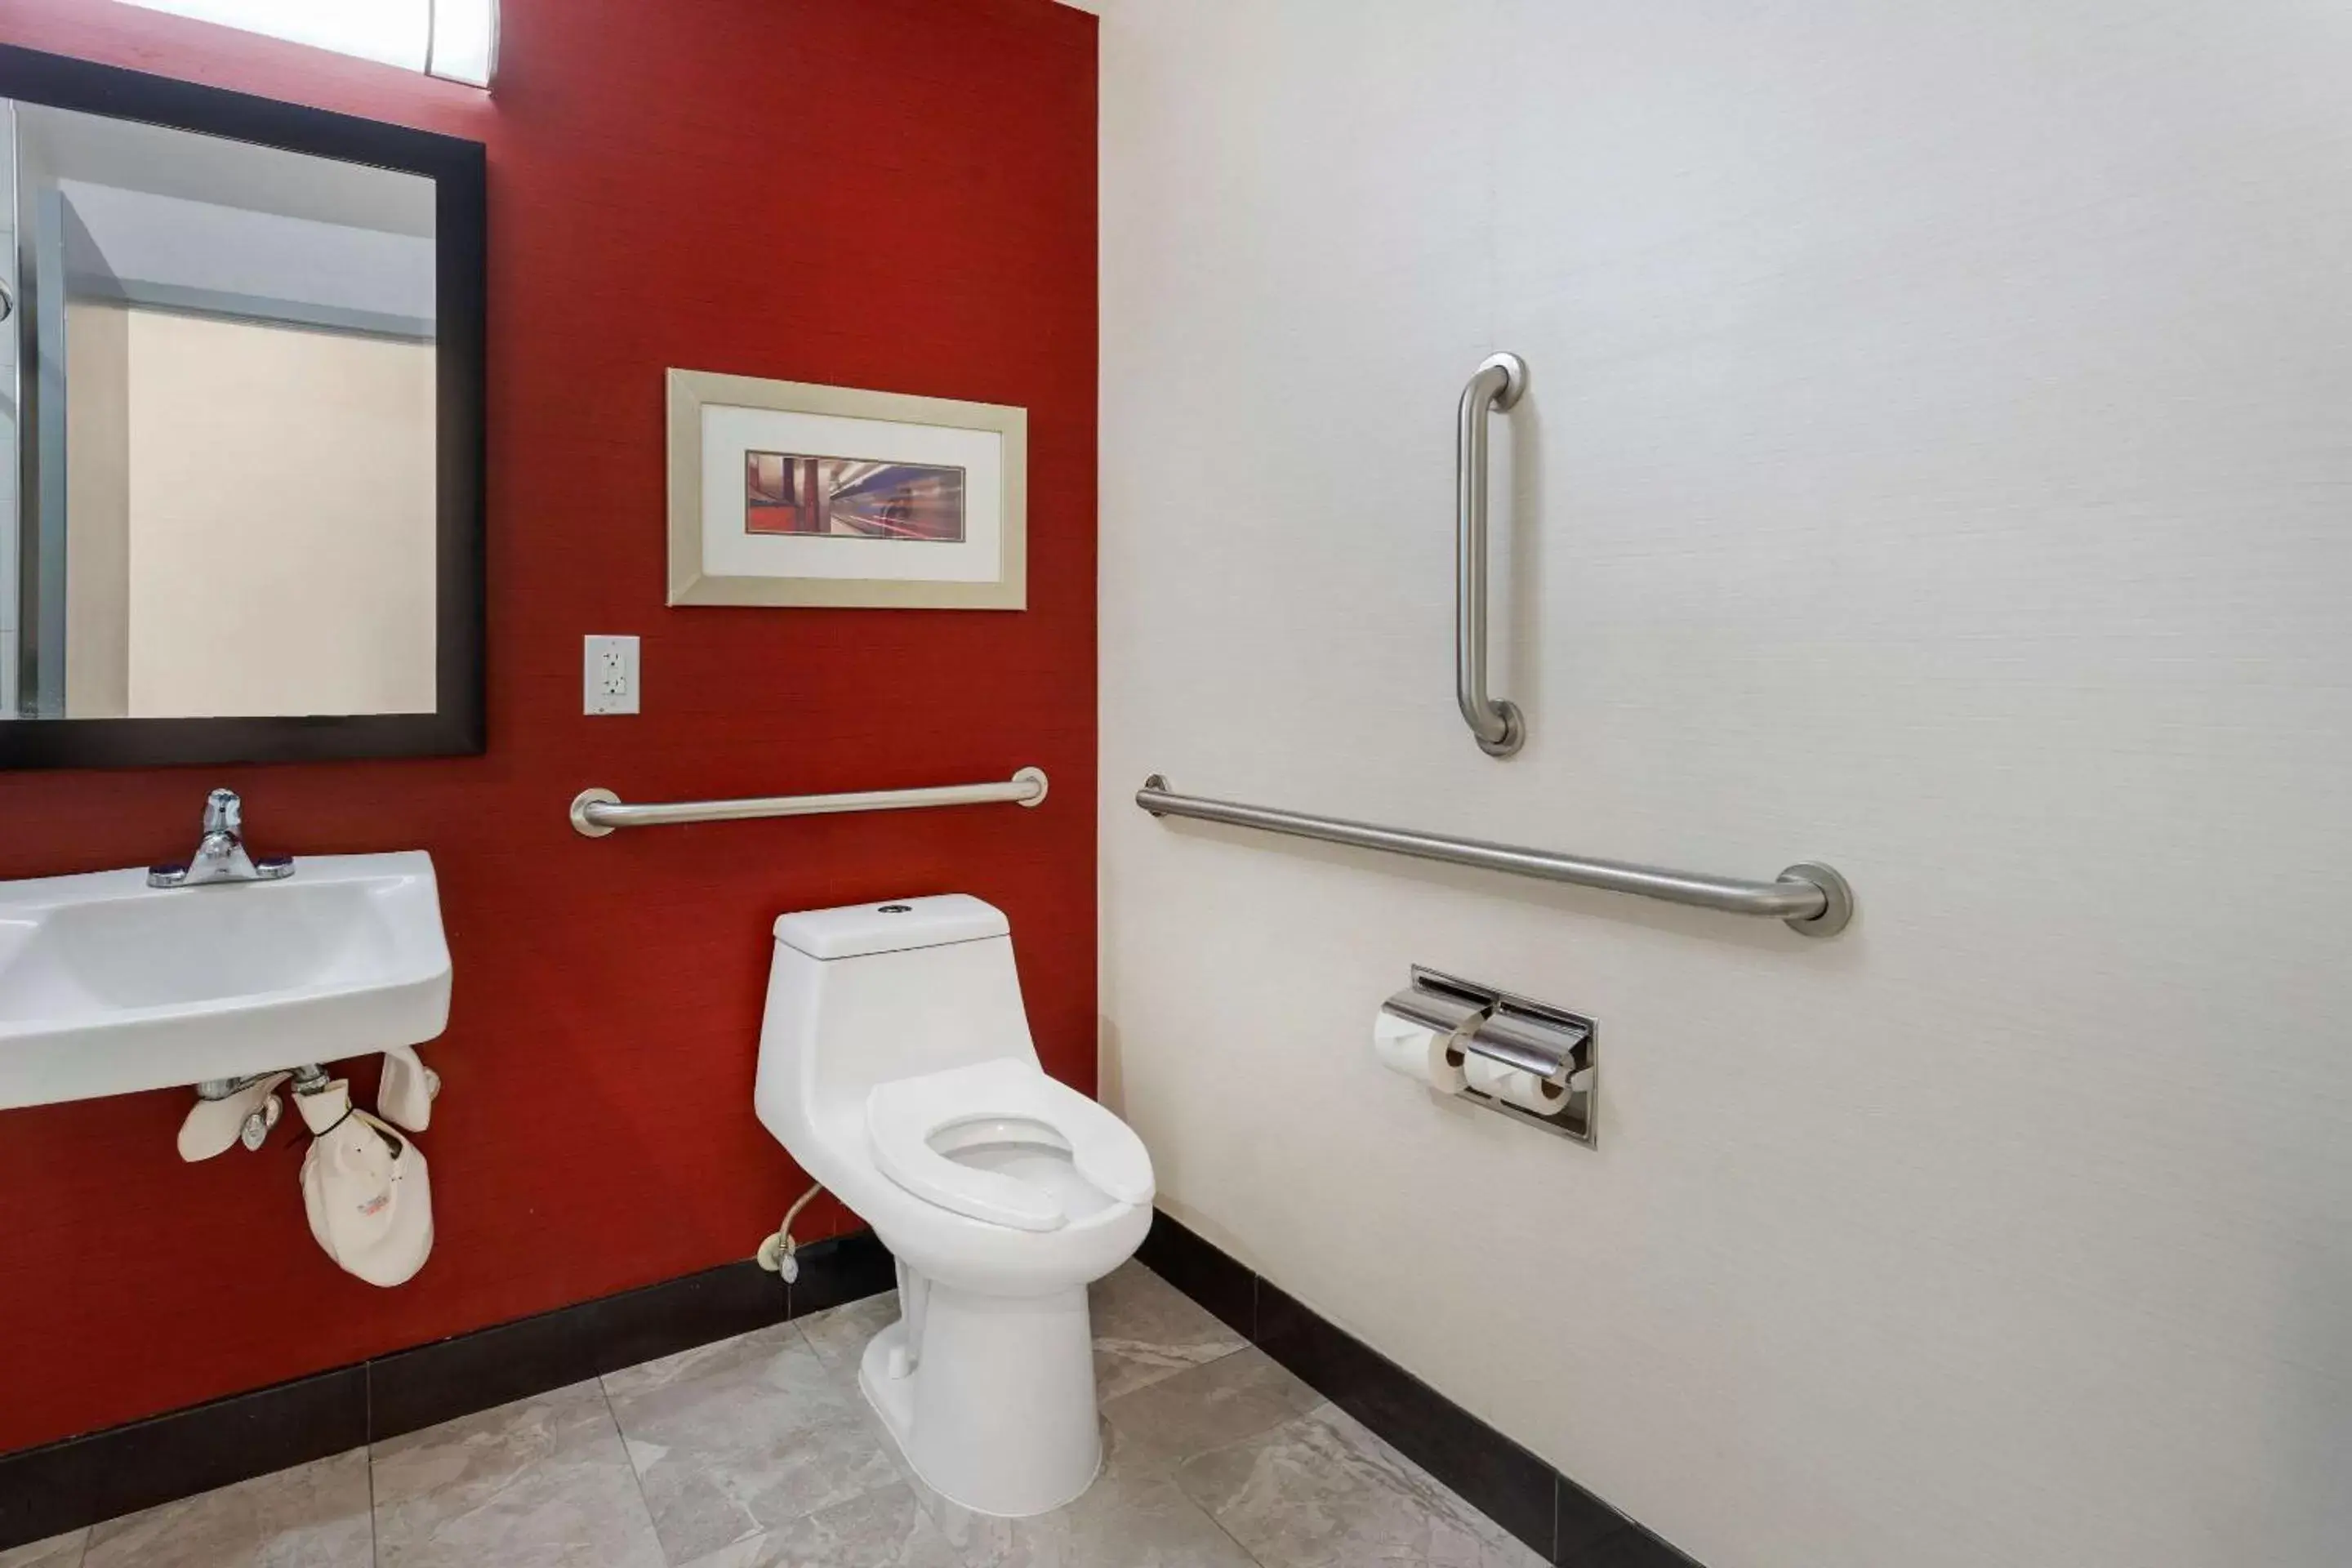 Bathroom in Comfort Inn & Suites near Stadium